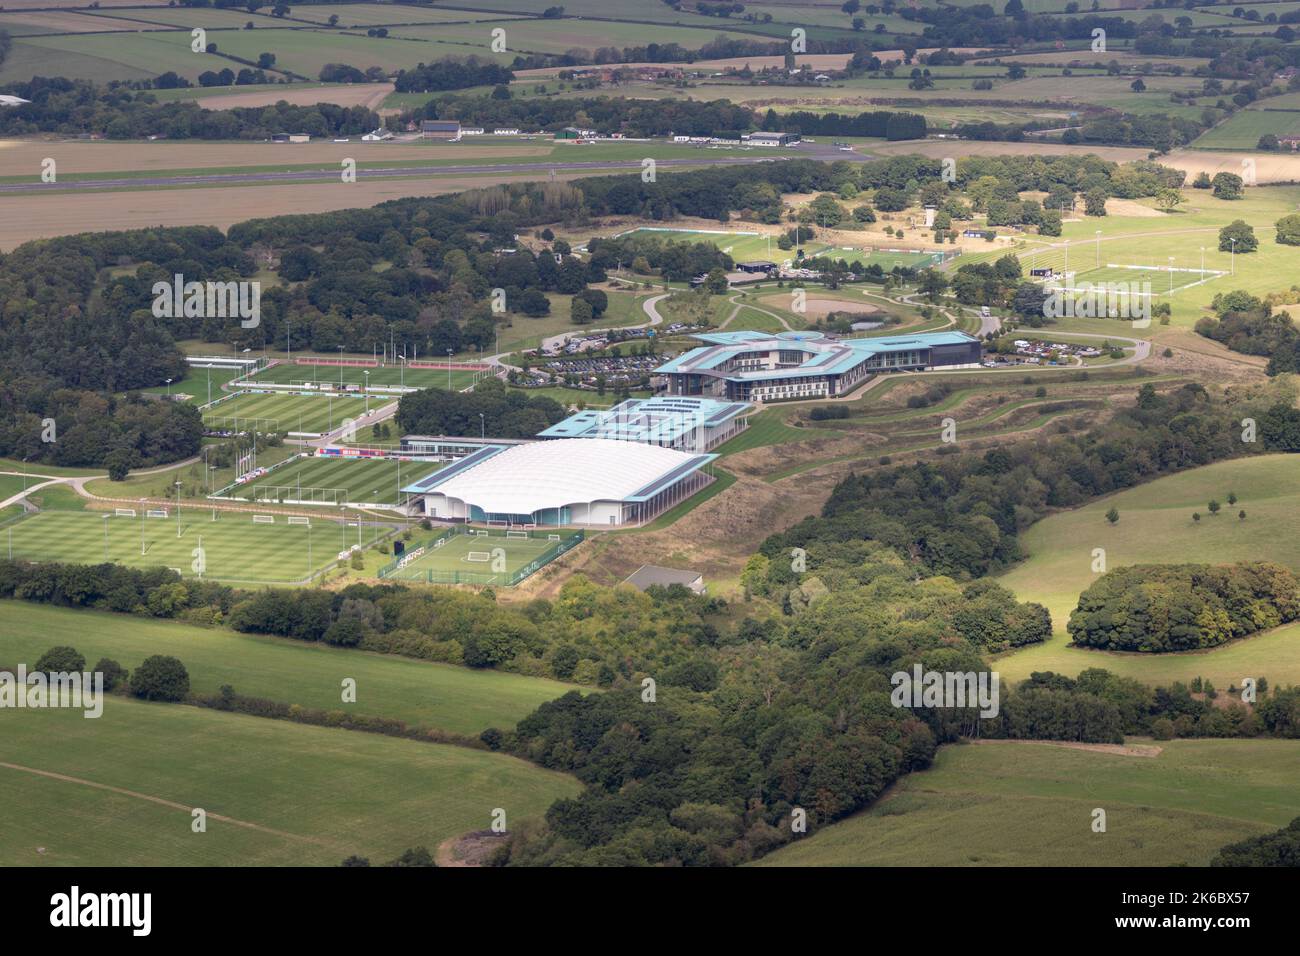 Veduta aerea del parco di Saint Georges, sede della Football Association e del campo di allenamento della squadra di calcio inglese. Situato in Staffordshire a 5 miglia Foto Stock